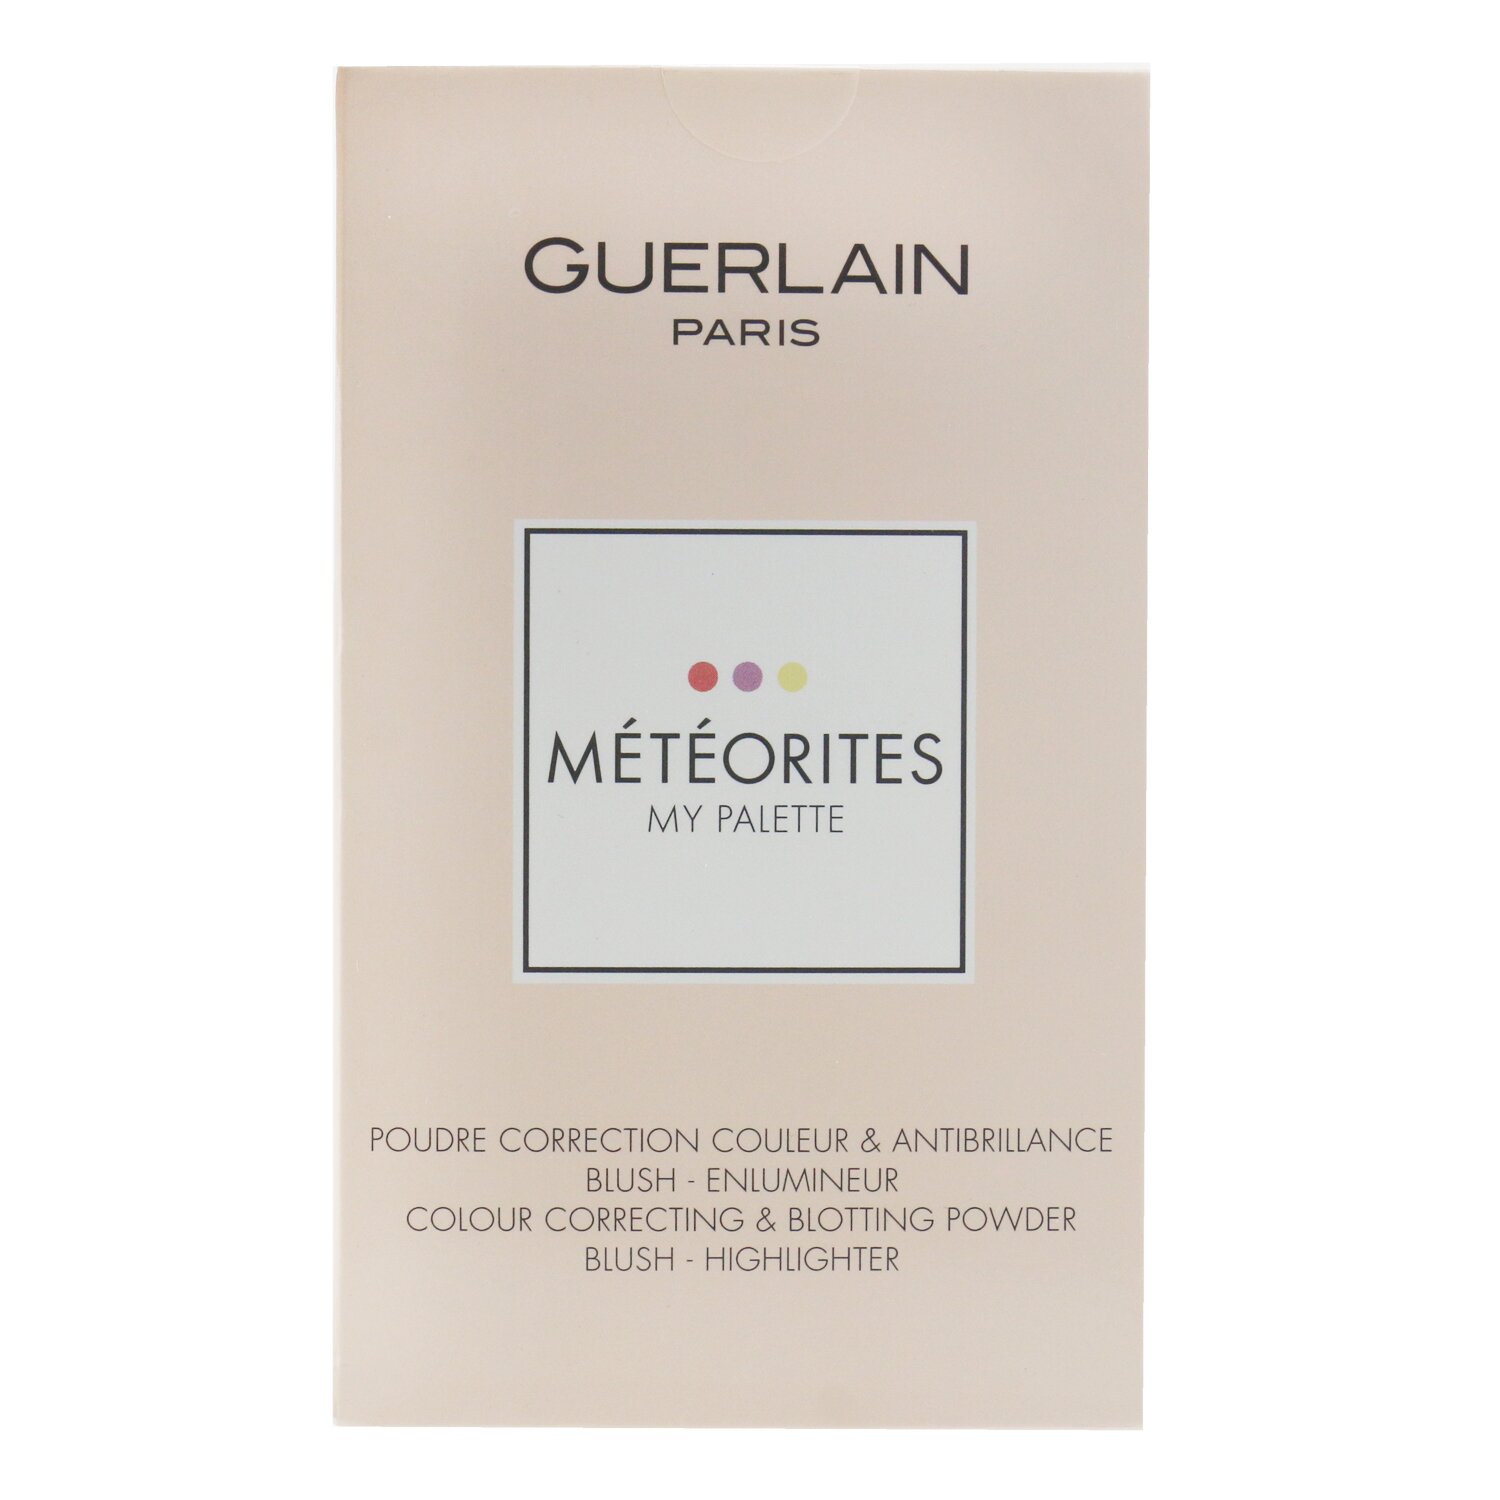 嬌蘭 Guerlain - Meteorites My Palette調色盤(顏色校正粉底，腮紅和修容棒） 0